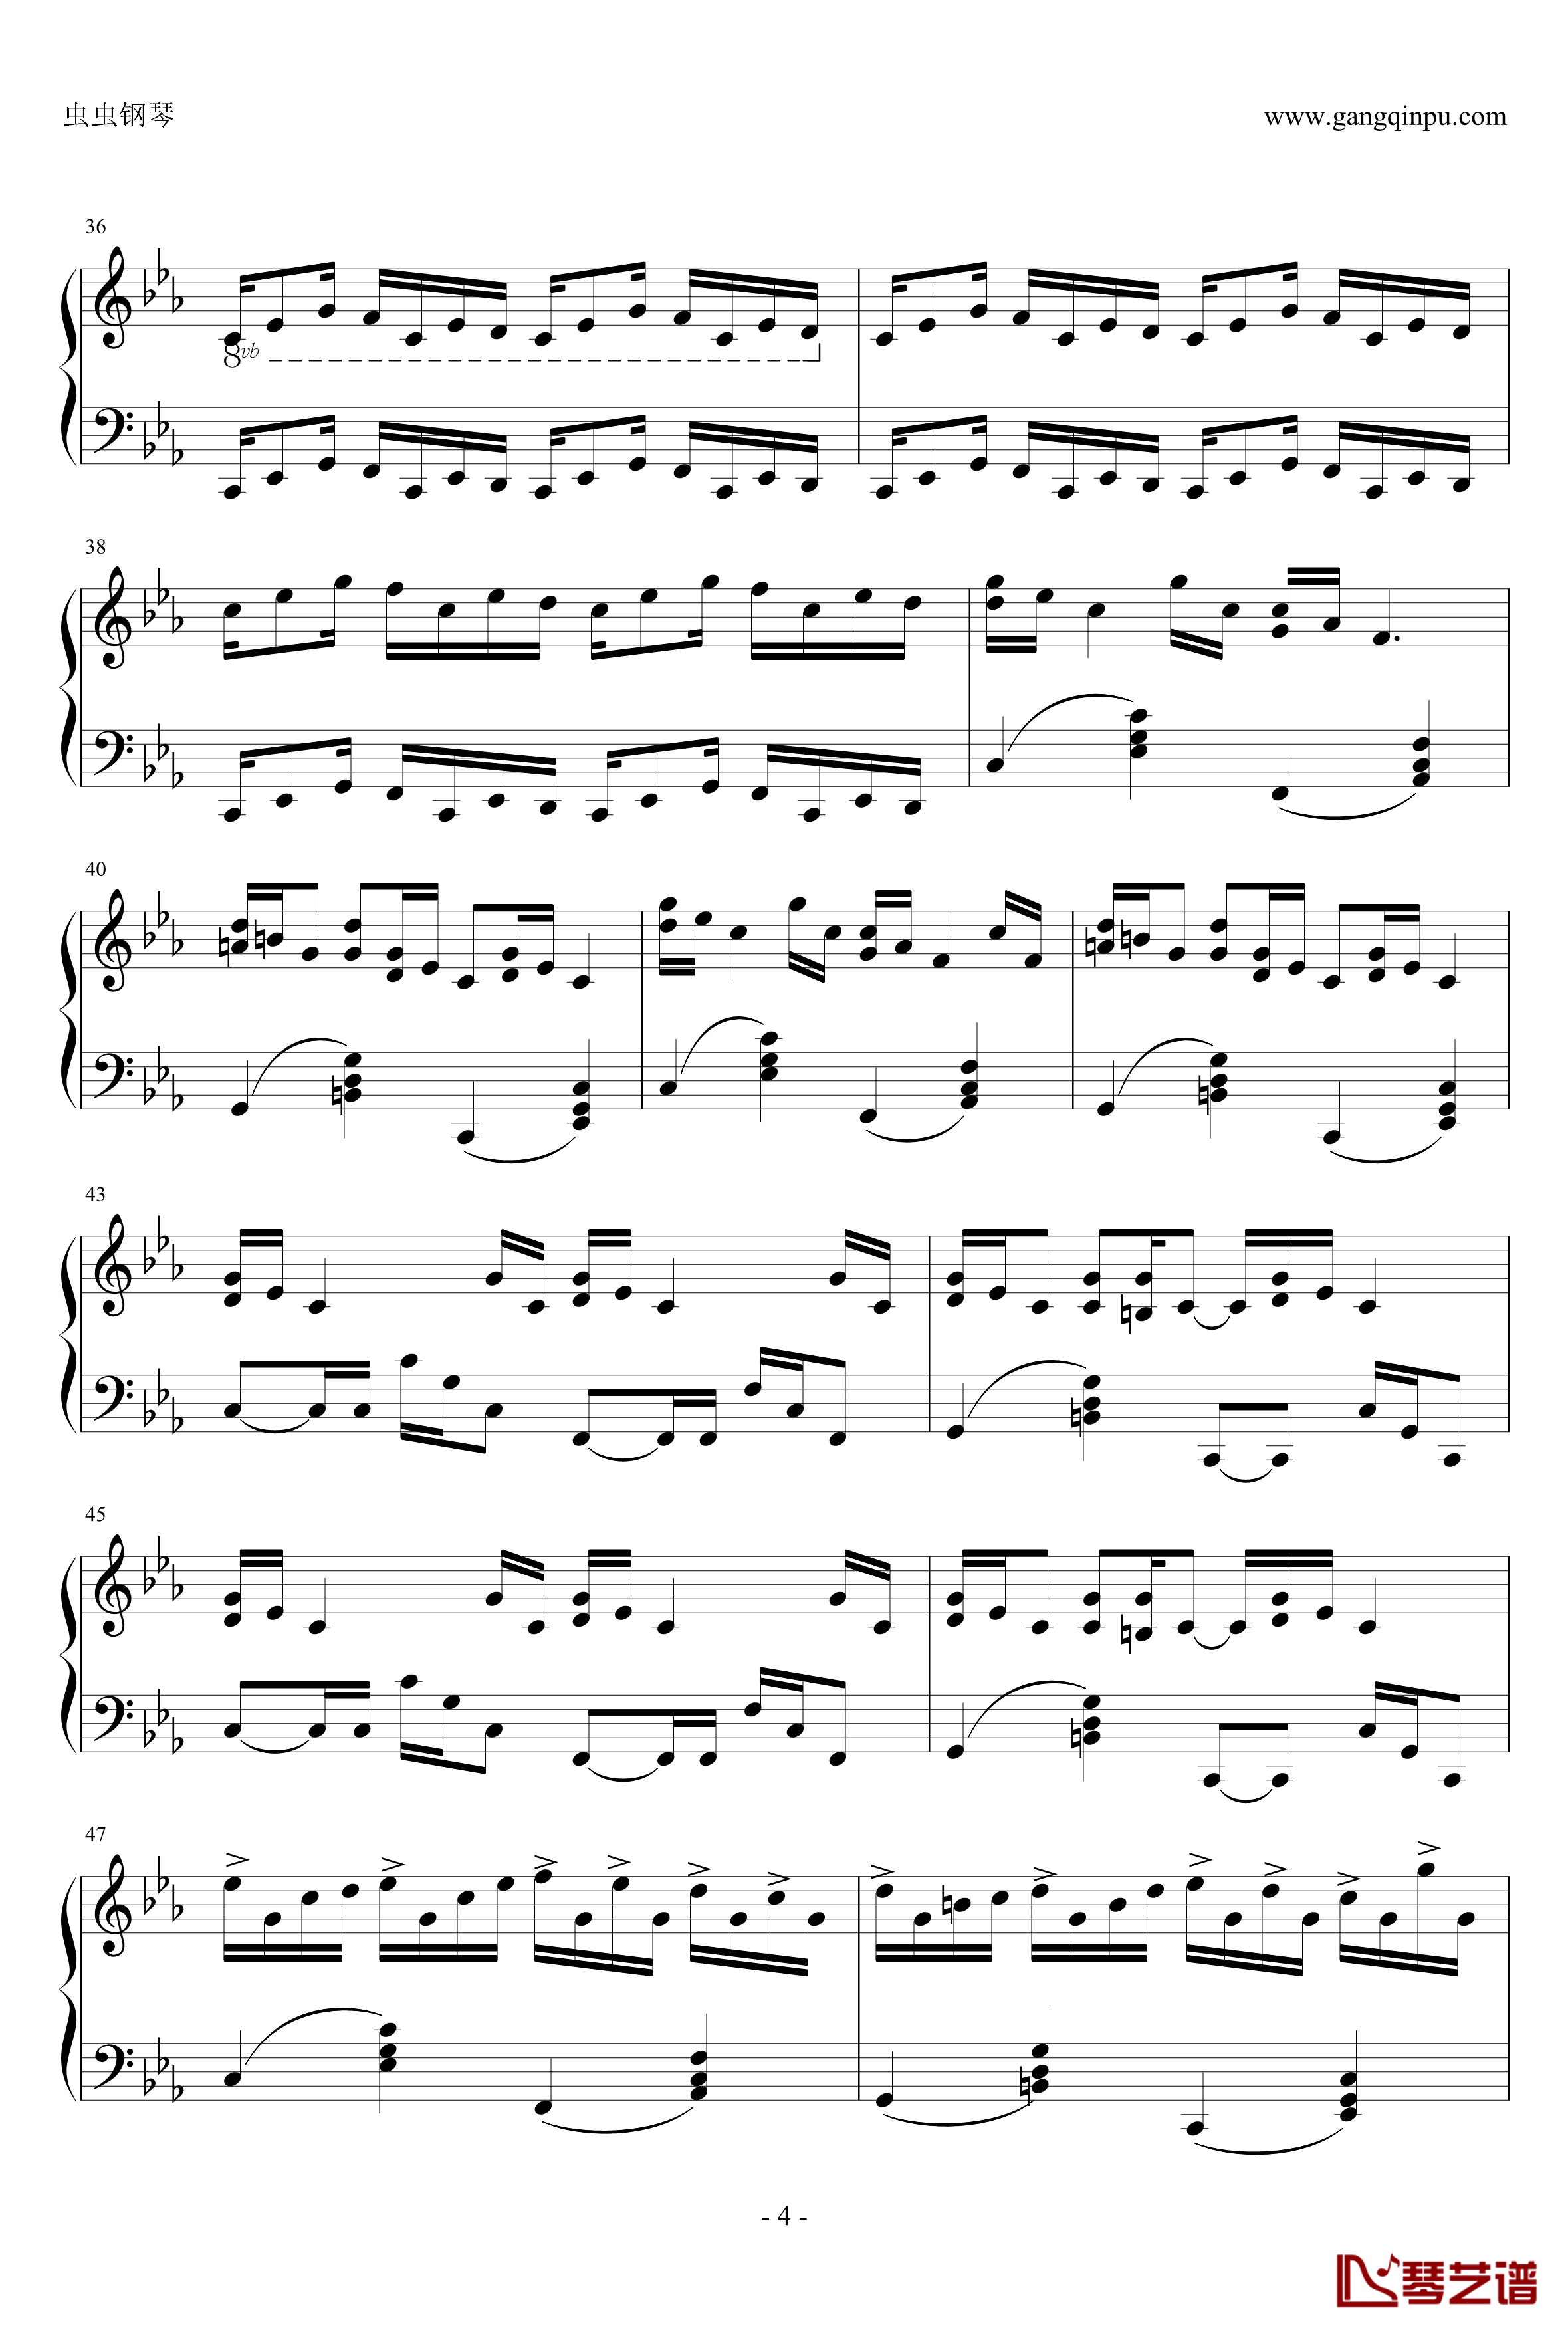 克罗地亚狂想曲钢琴谱-完美版-马克西姆-Maksim·Mrvica4